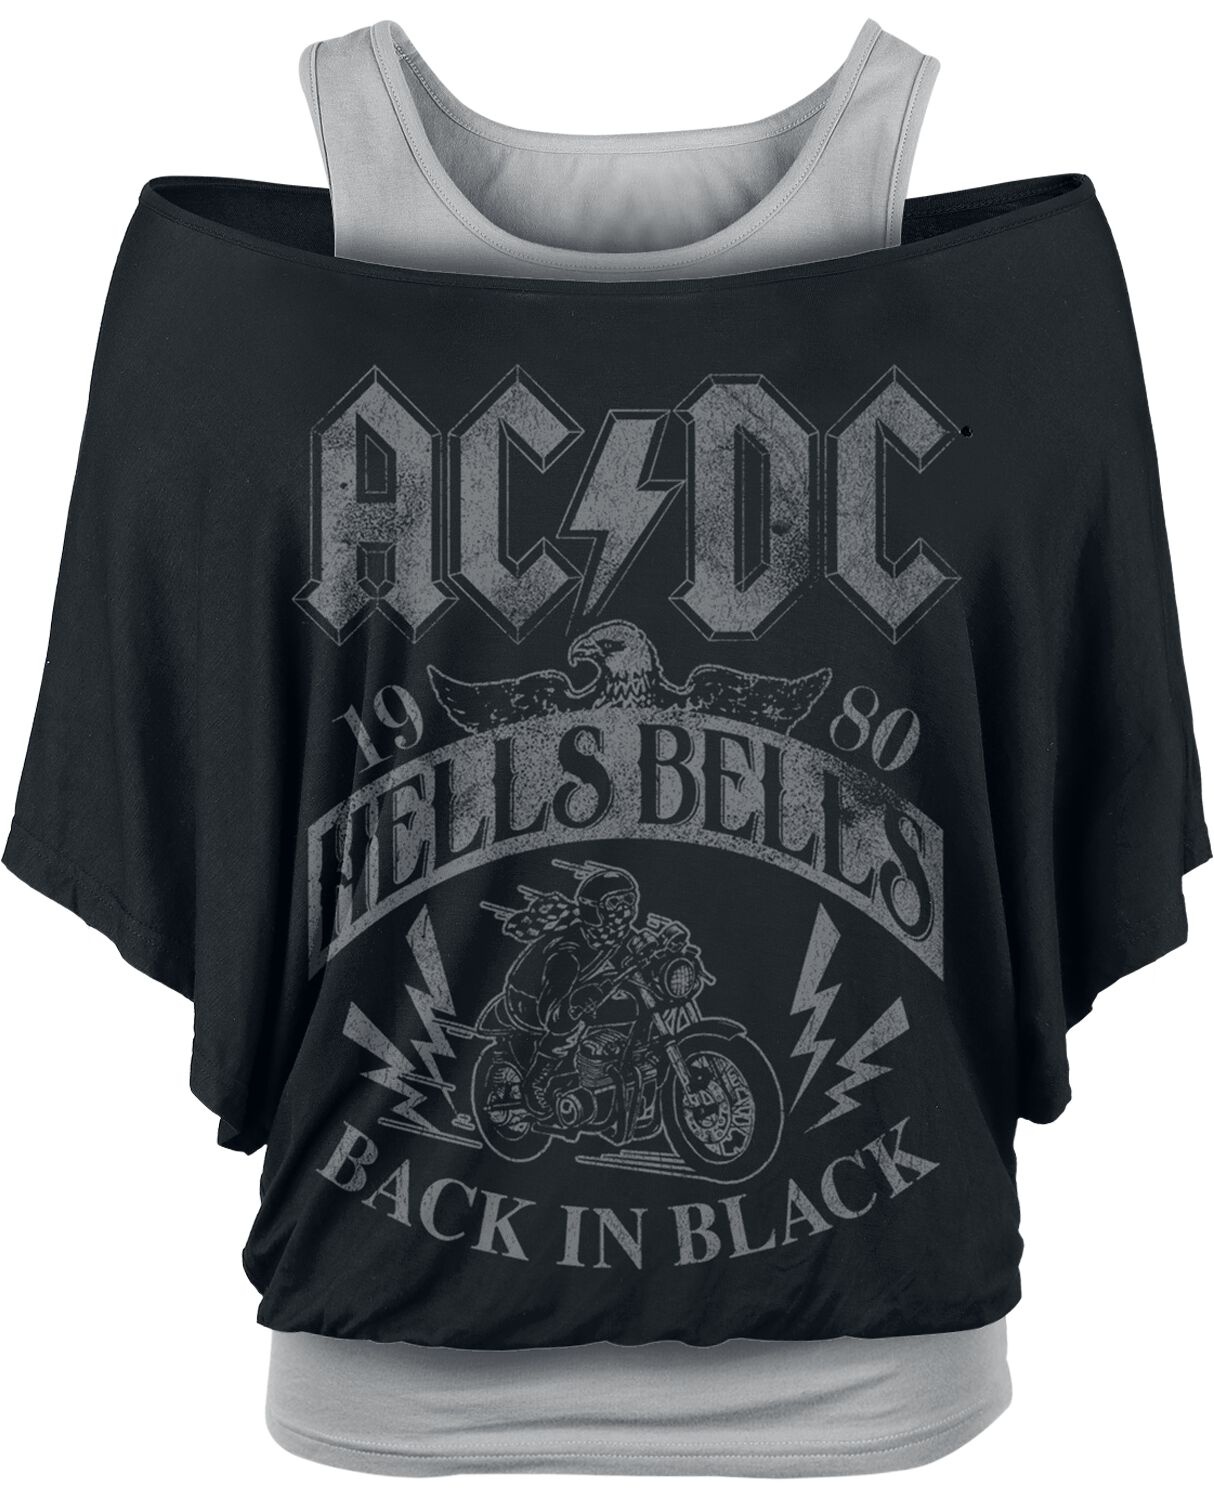 AC/DC T-Shirt - Hells Bells 1980 - S bis XXL - für Damen - Größe S - schwarz/grau  - Lizenziertes Merchandise!